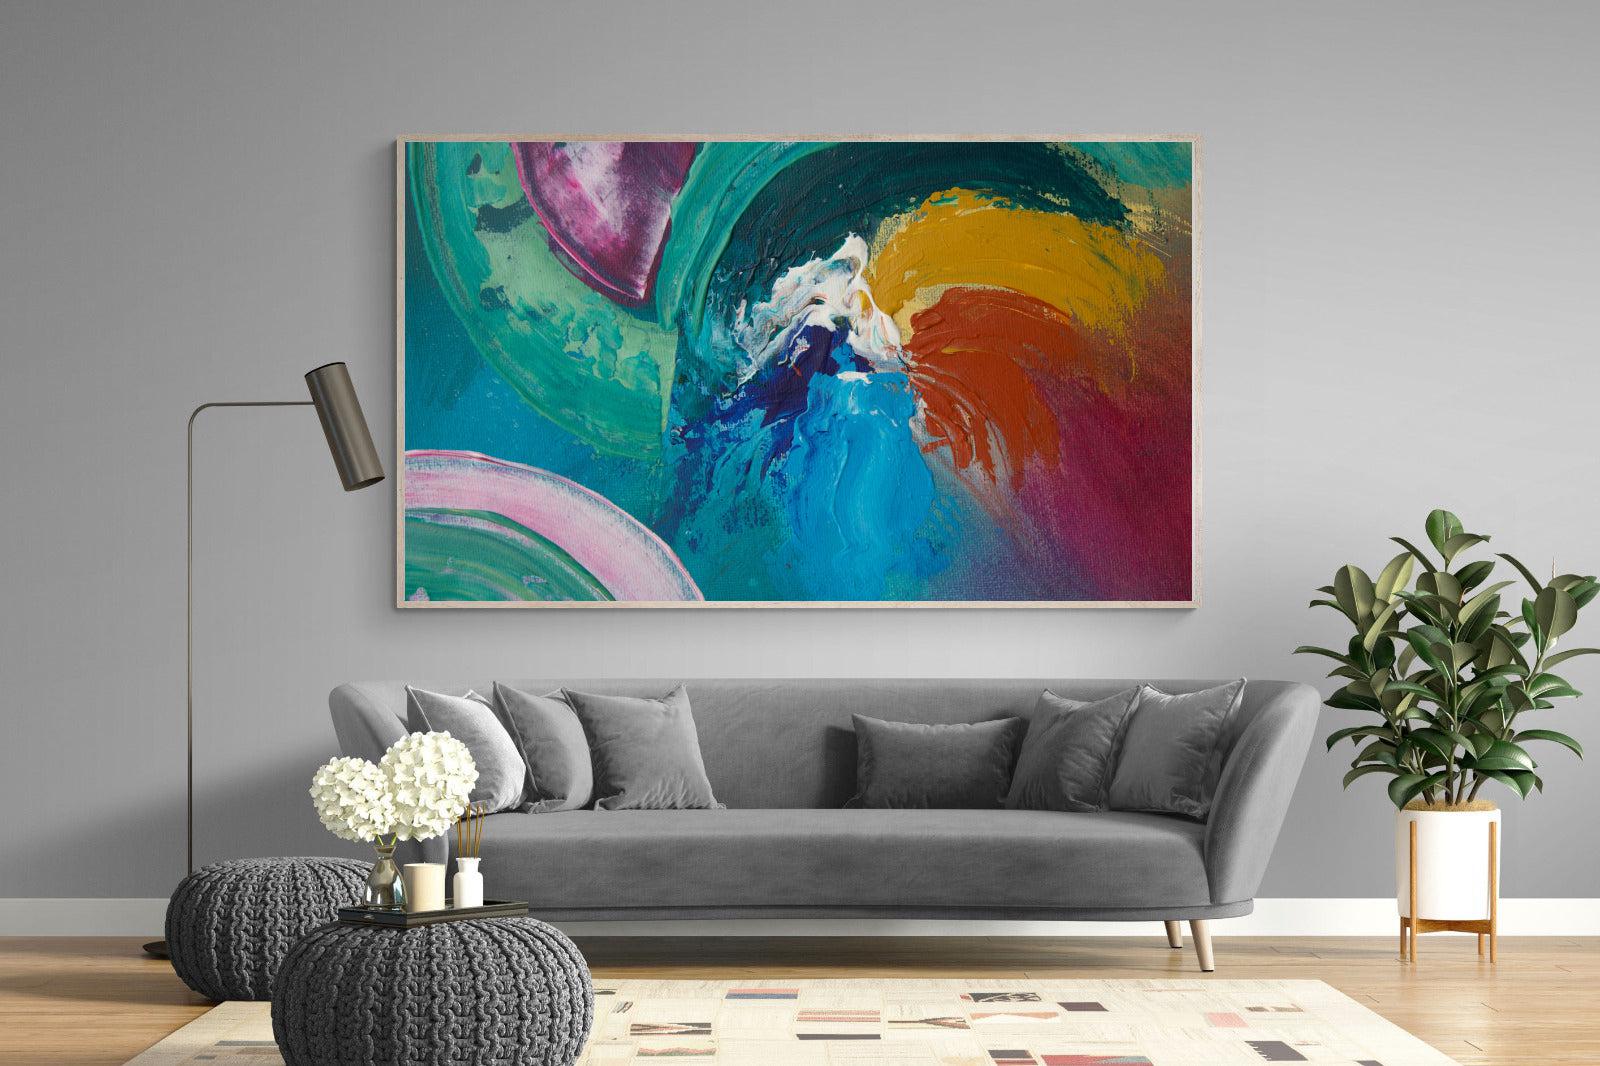 Vortex-Wall_Art-220 x 130cm-Mounted Canvas-Wood-Pixalot